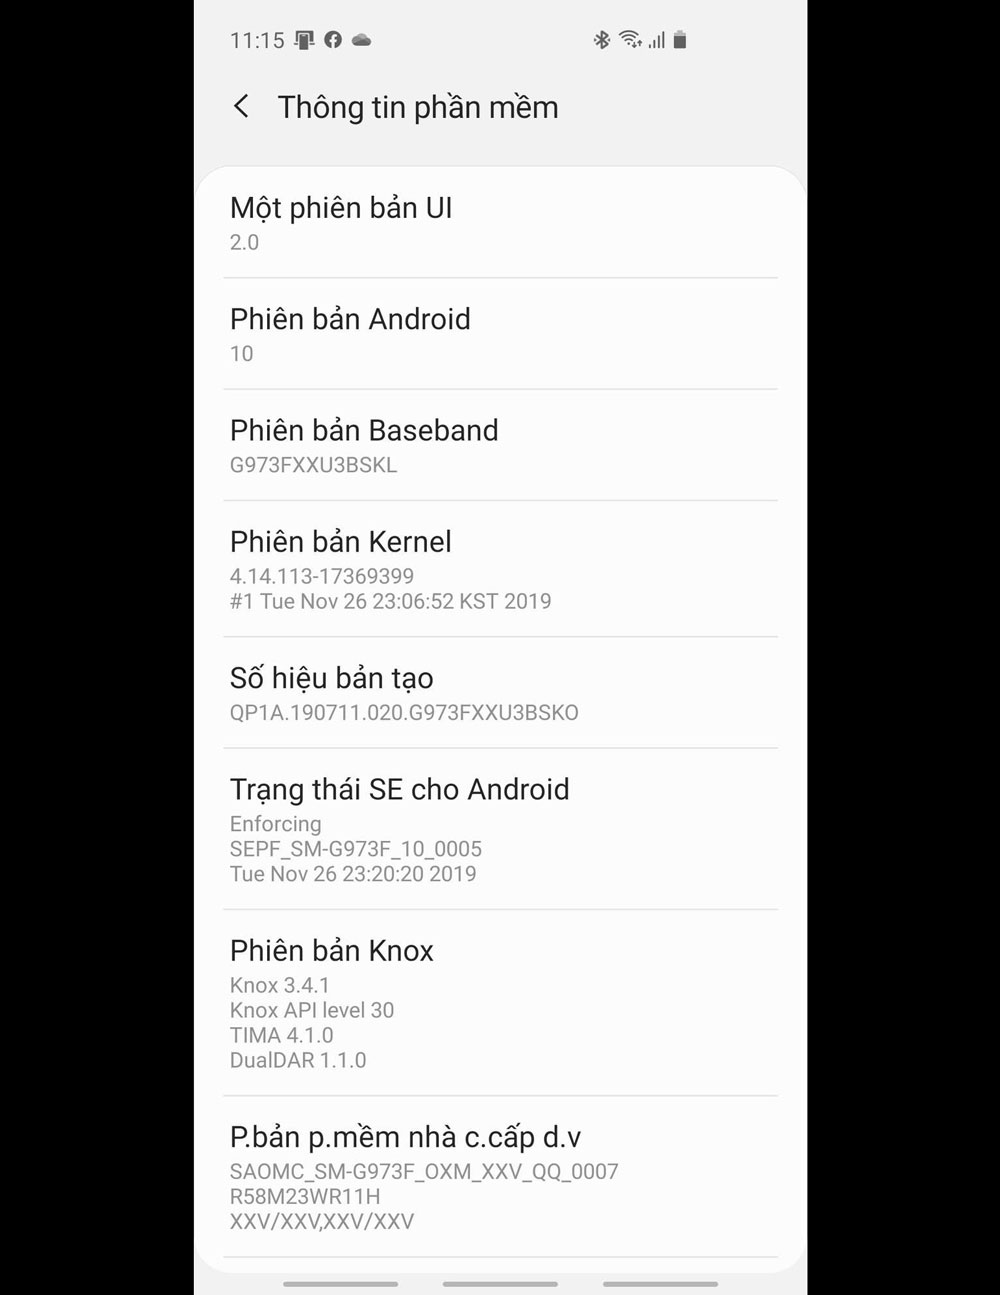 Samsung chính thức
cập nhật Android 10 cho Galaxy S10 series tại Việt Nam